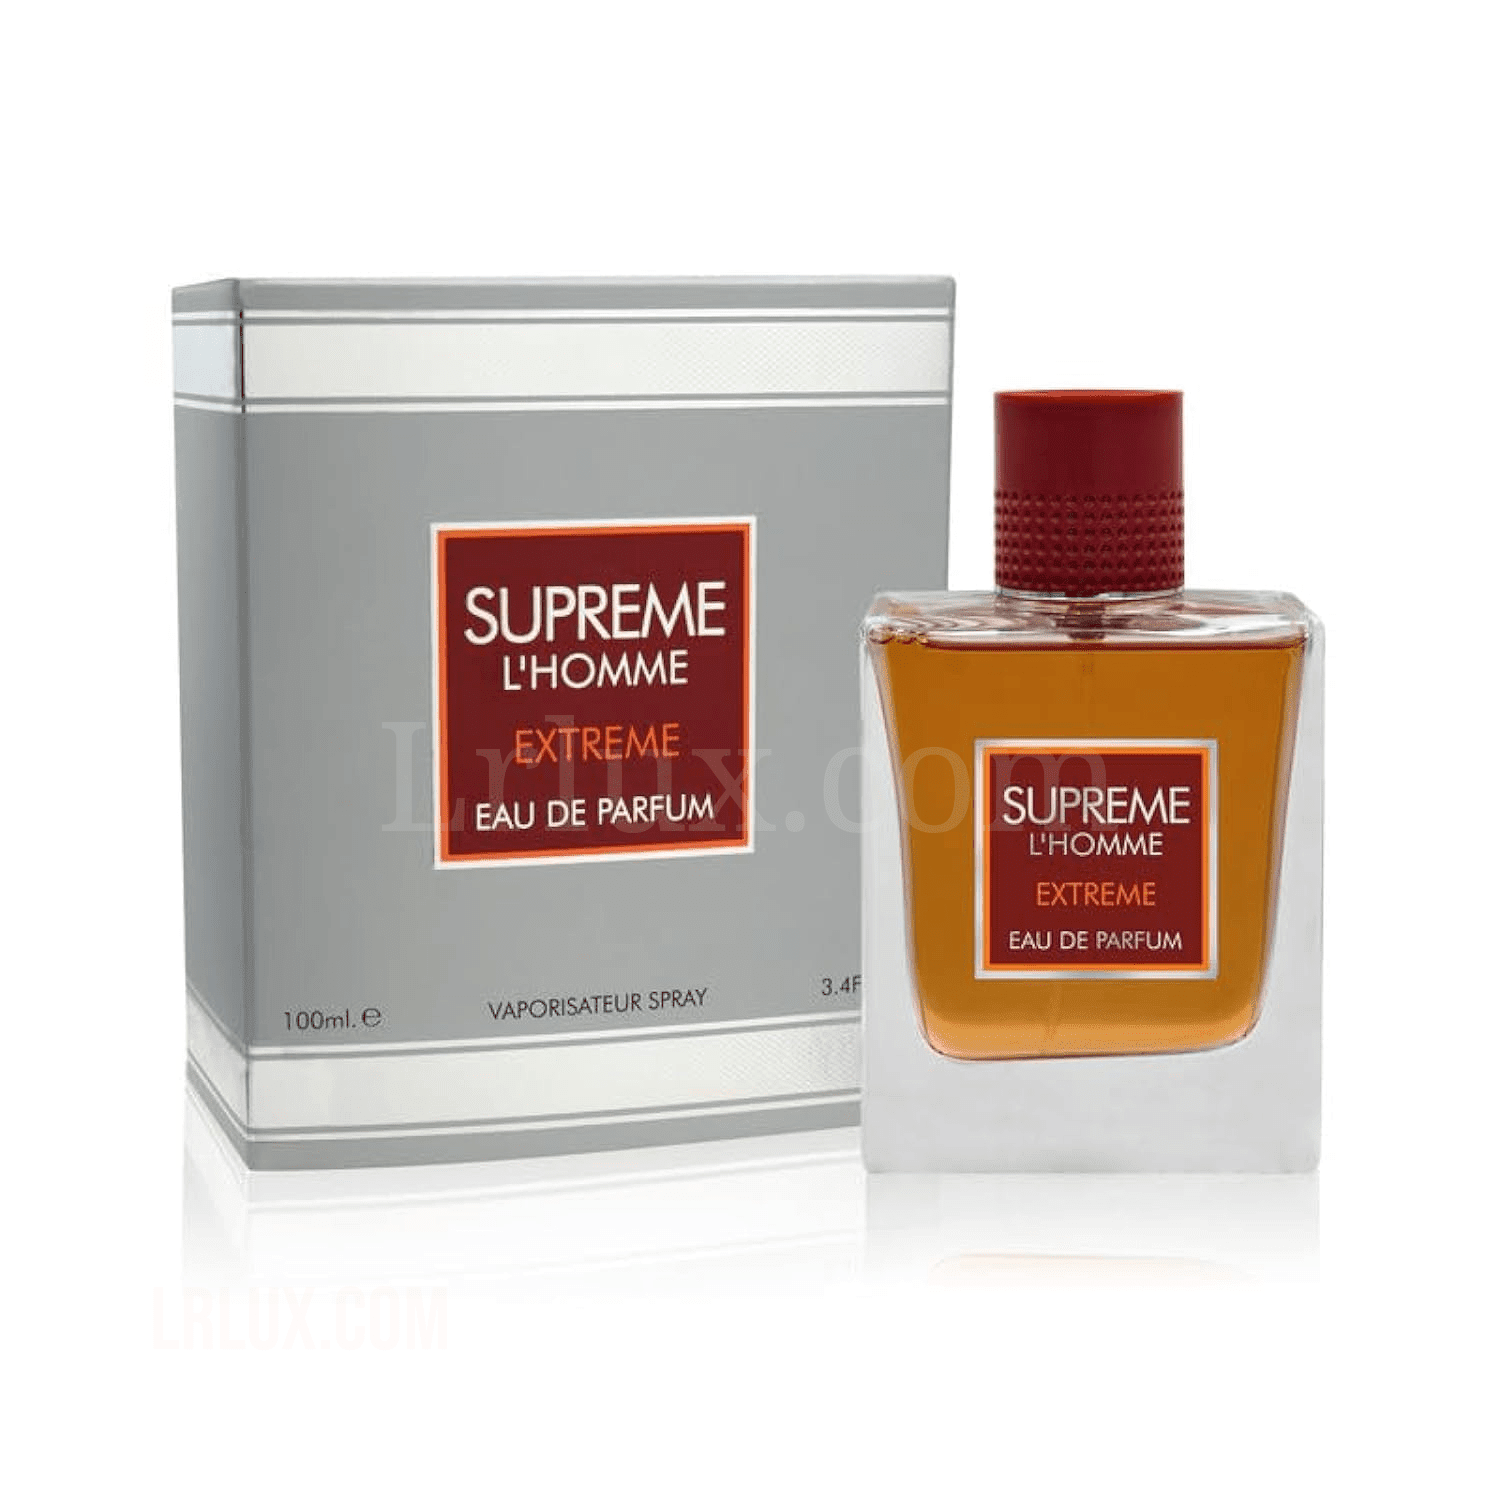 Supreme L'homme Extreme - Eau de Parfum Perfume For Men - 100ml